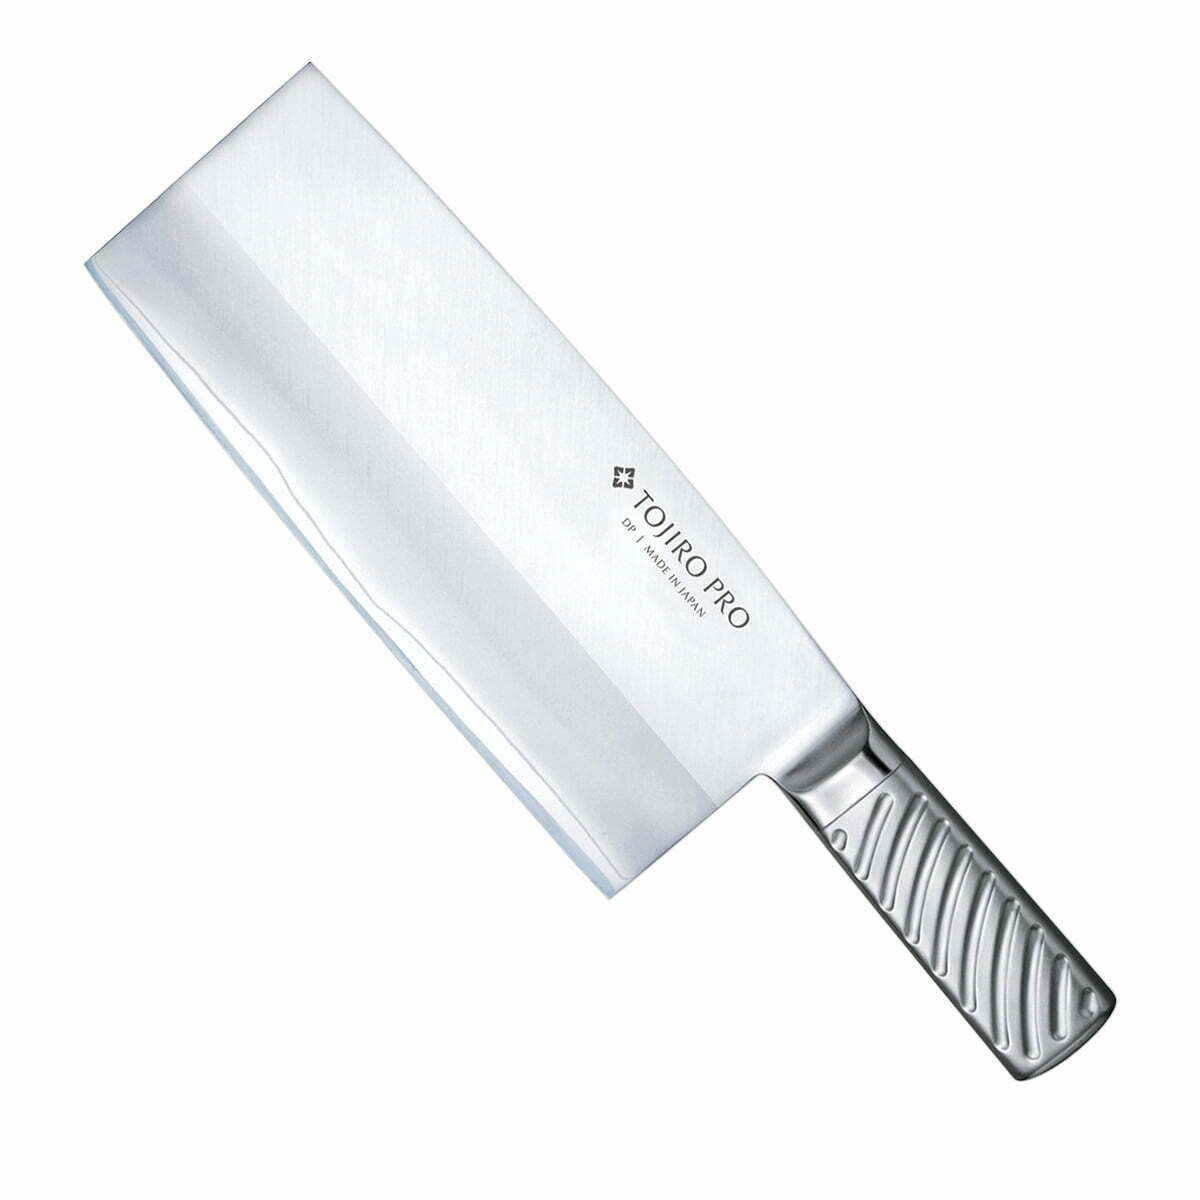 סכין קופיץ עצמות 220מ״מ 220מ״מ מחוזקת 3 שכבות: פלדת פחמן יפנית VG-10 עטופה פלדת אל-חלד גימור מט מלוטש טוג׳ירו יפן SKTOJIF-63011